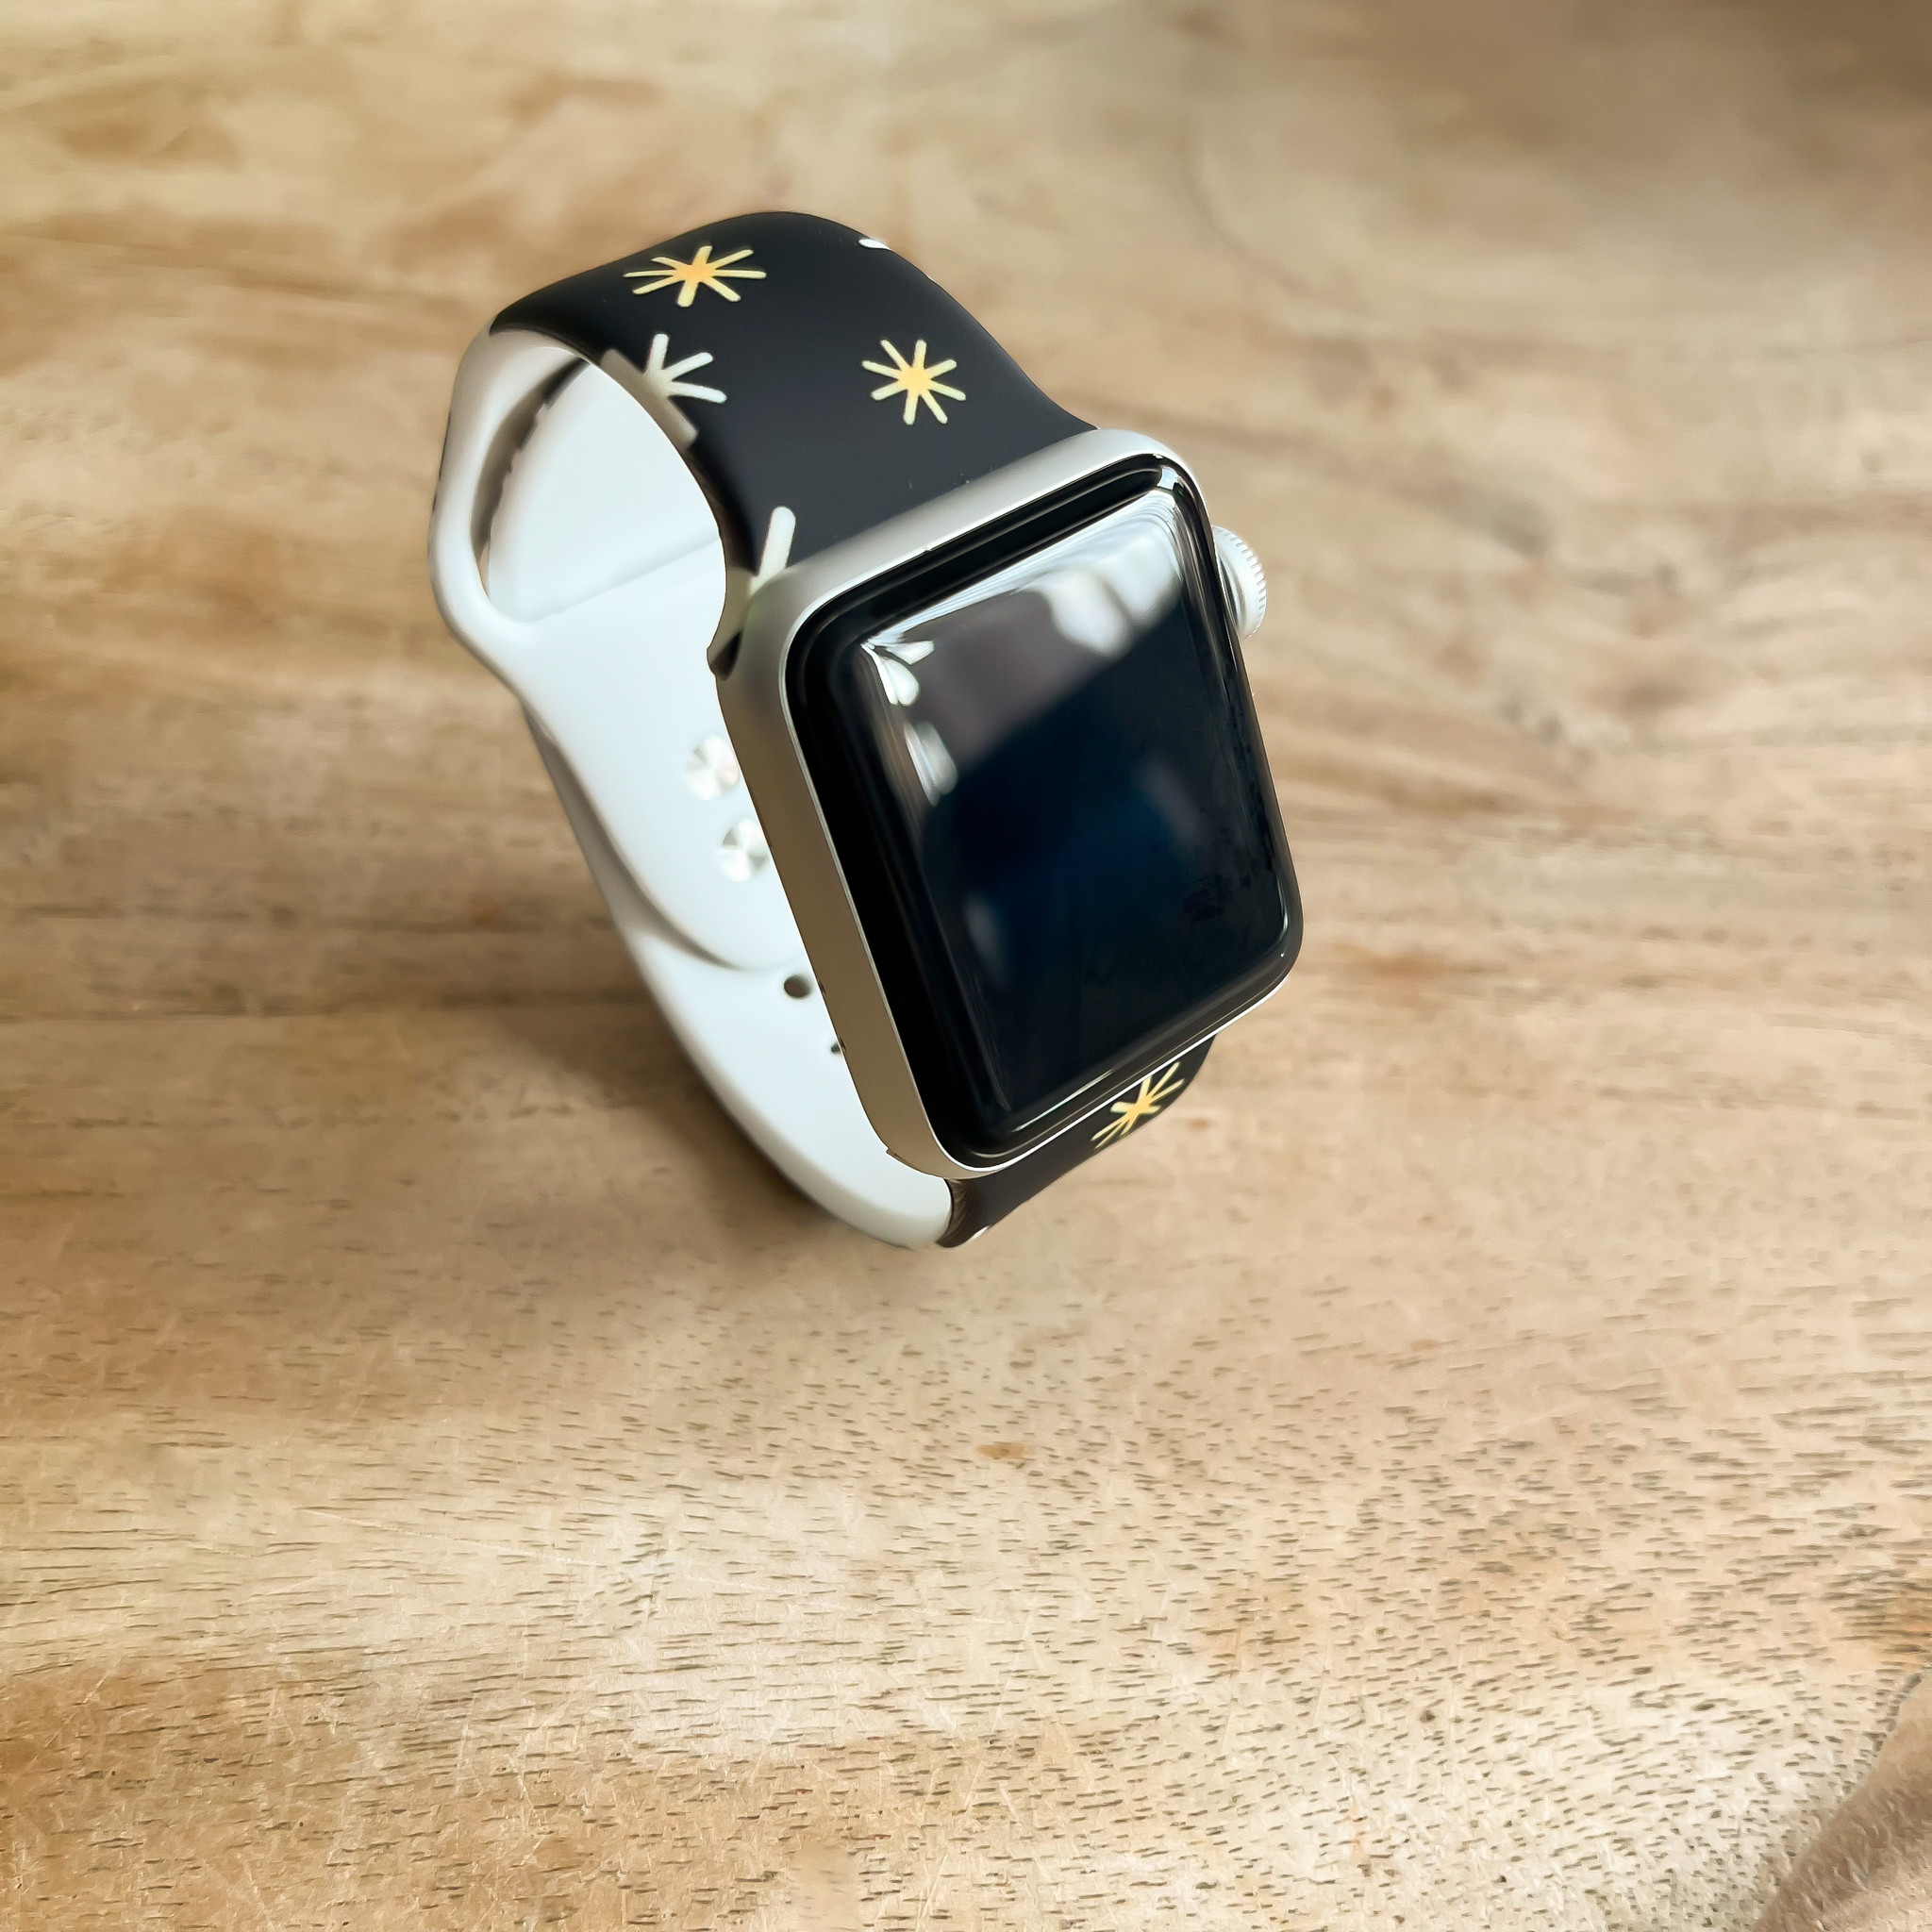 Apple Watch druck Sportarmband - Weihnachten schwarz